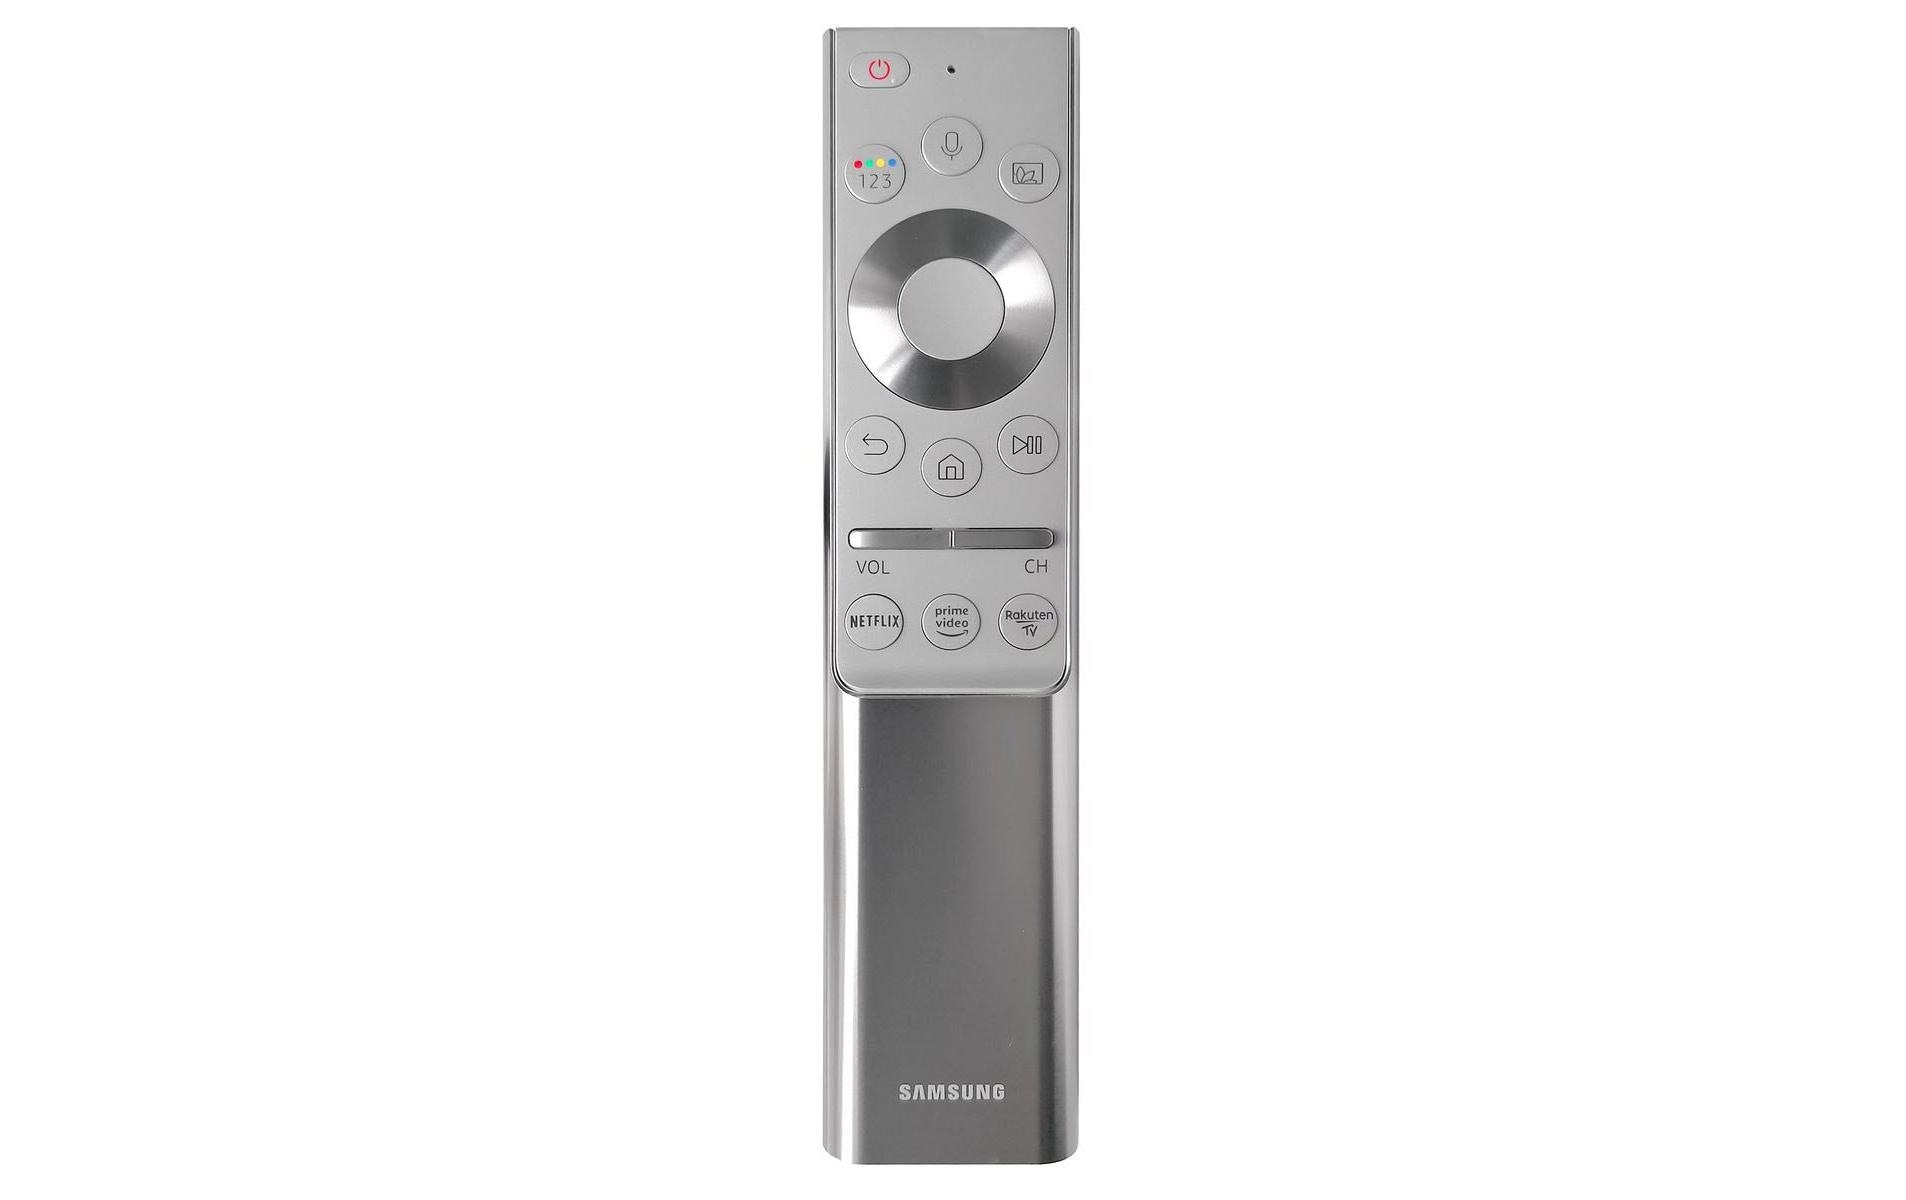 Samsung Fernbedienung One Remote Control für 8K/Q95/Frame